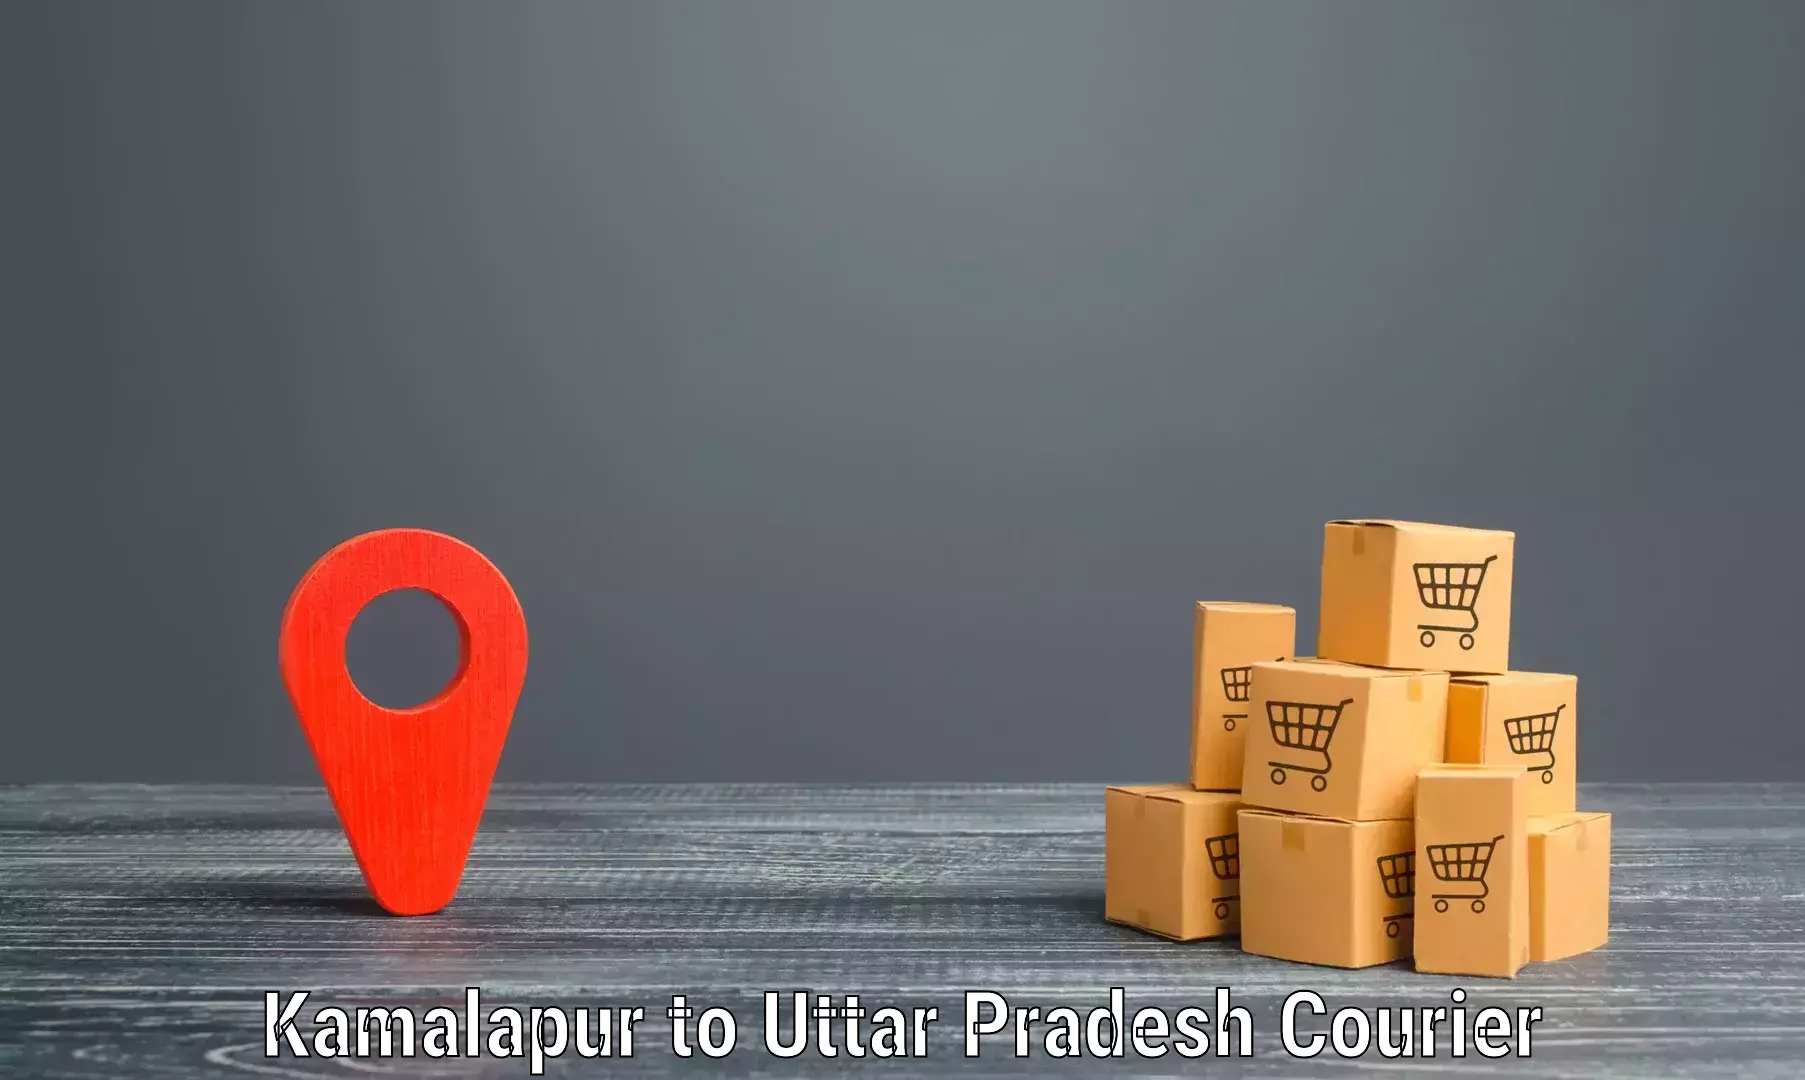 Sustainable shipping practices Kamalapur to Sidhauli